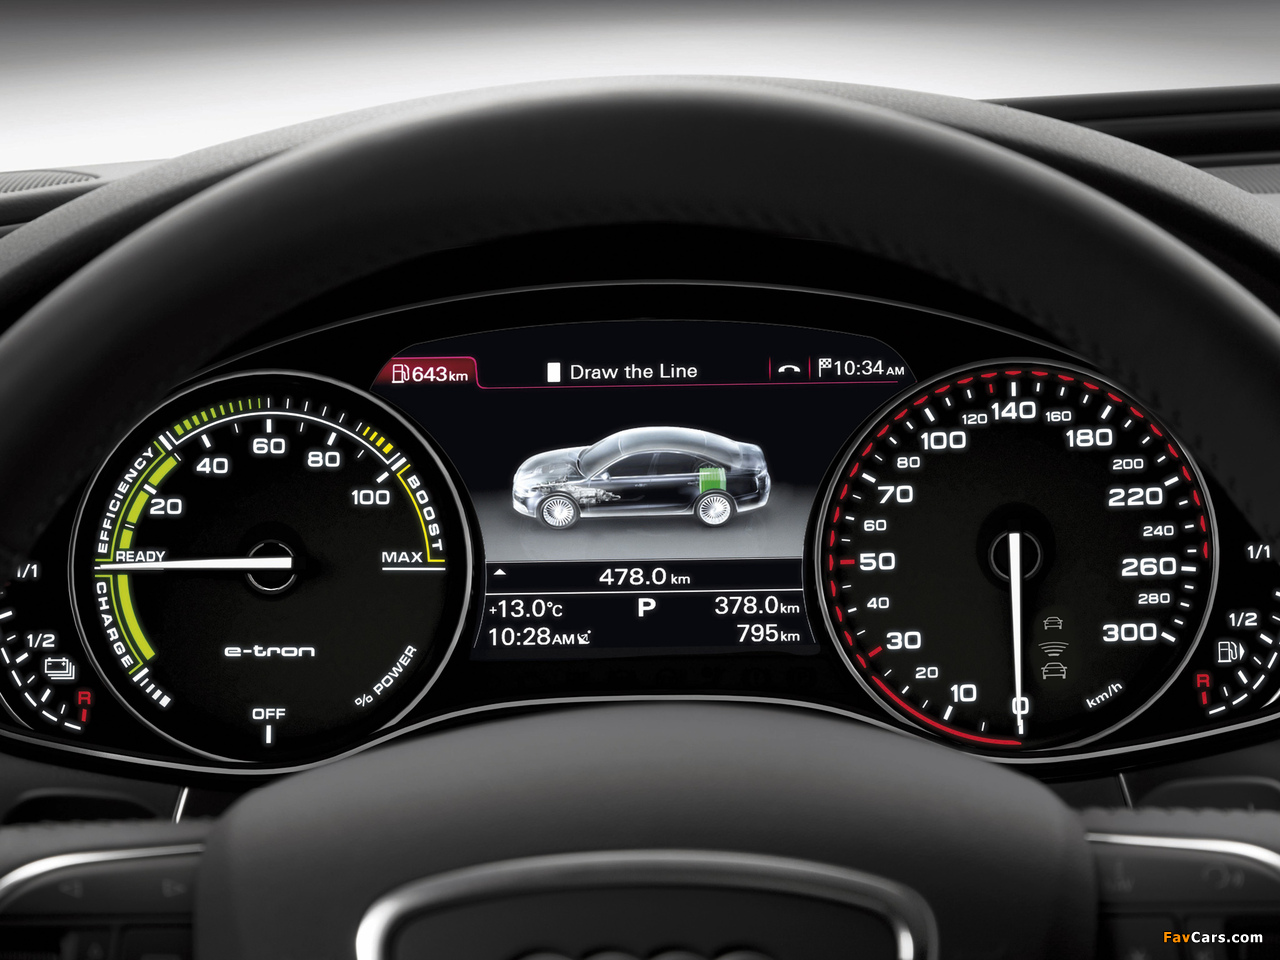 Images of Audi A6 L e-tron Concept (4G,C7) 2012 (1280x960)